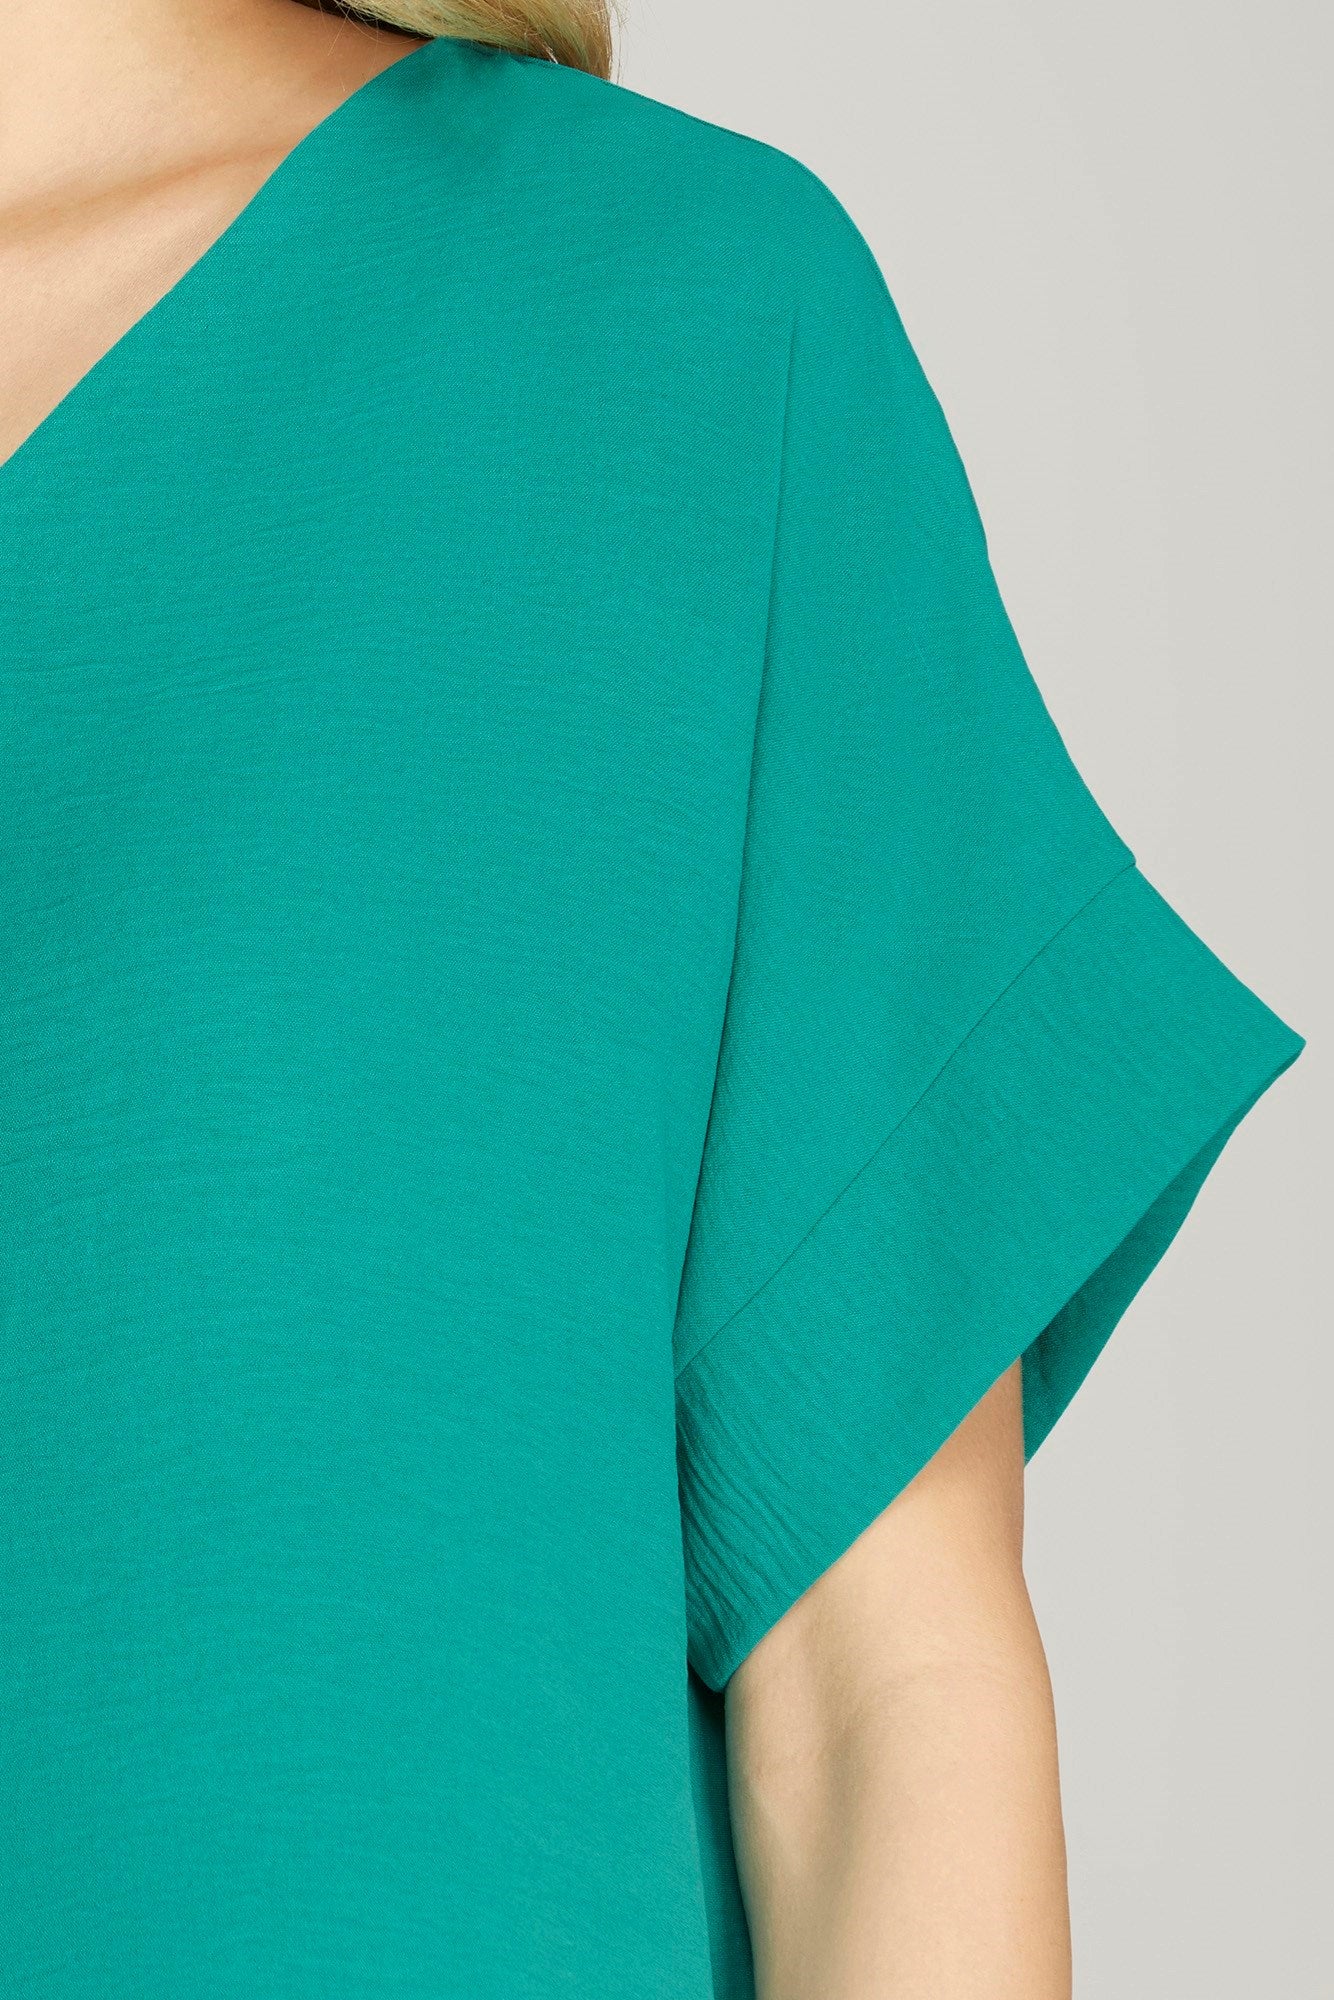 Sale Short Sleeve Drop Shoulder Woven Top Emerald